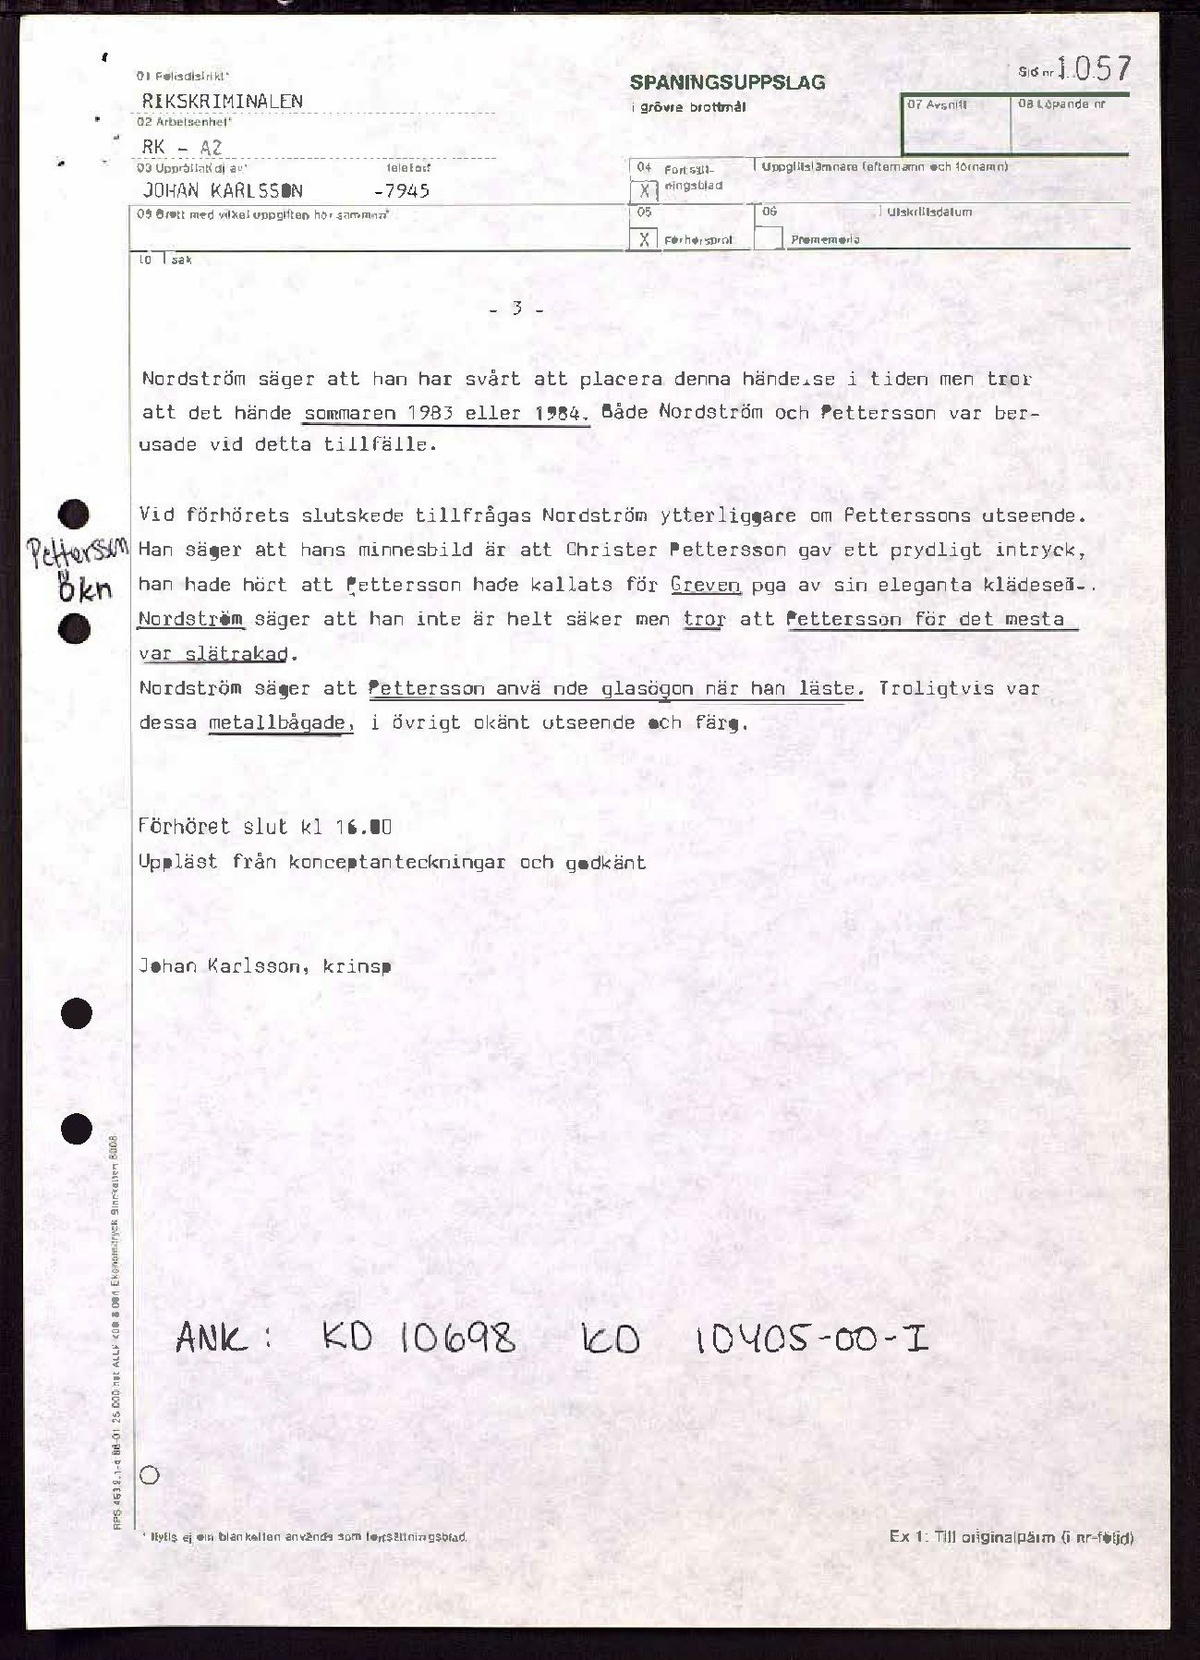 Pol-1989-01-04 1510 KD10808-00 Förhör med Erik Nordström om CP.pdf